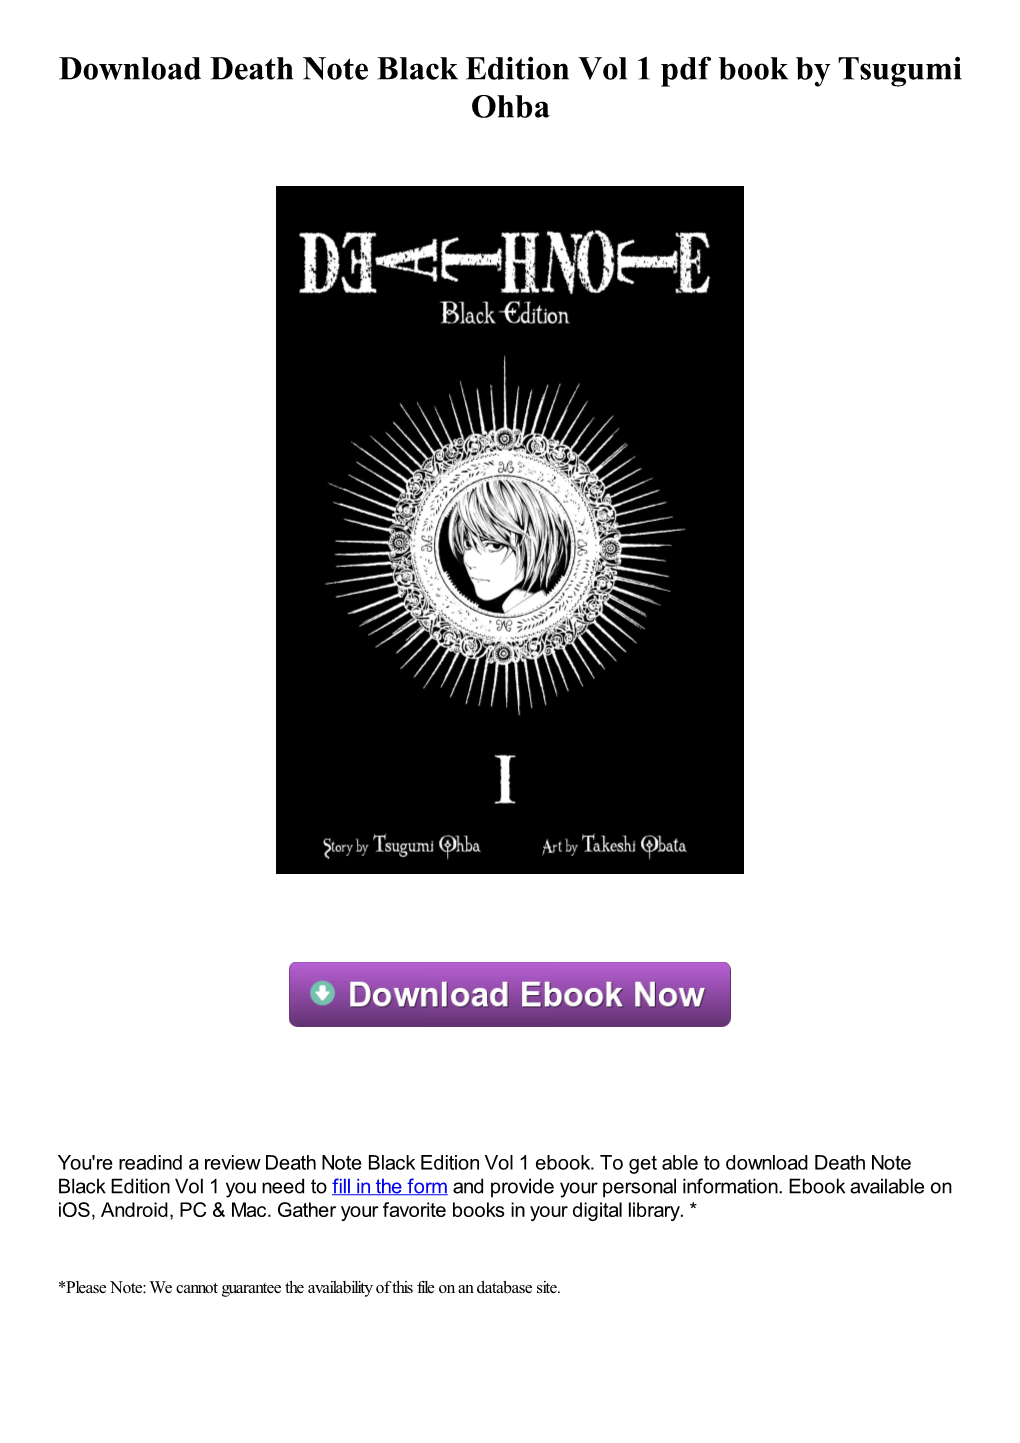 Download Death Note Black Edition Vol 1 Pdf Ebook by Tsugumi Ohba